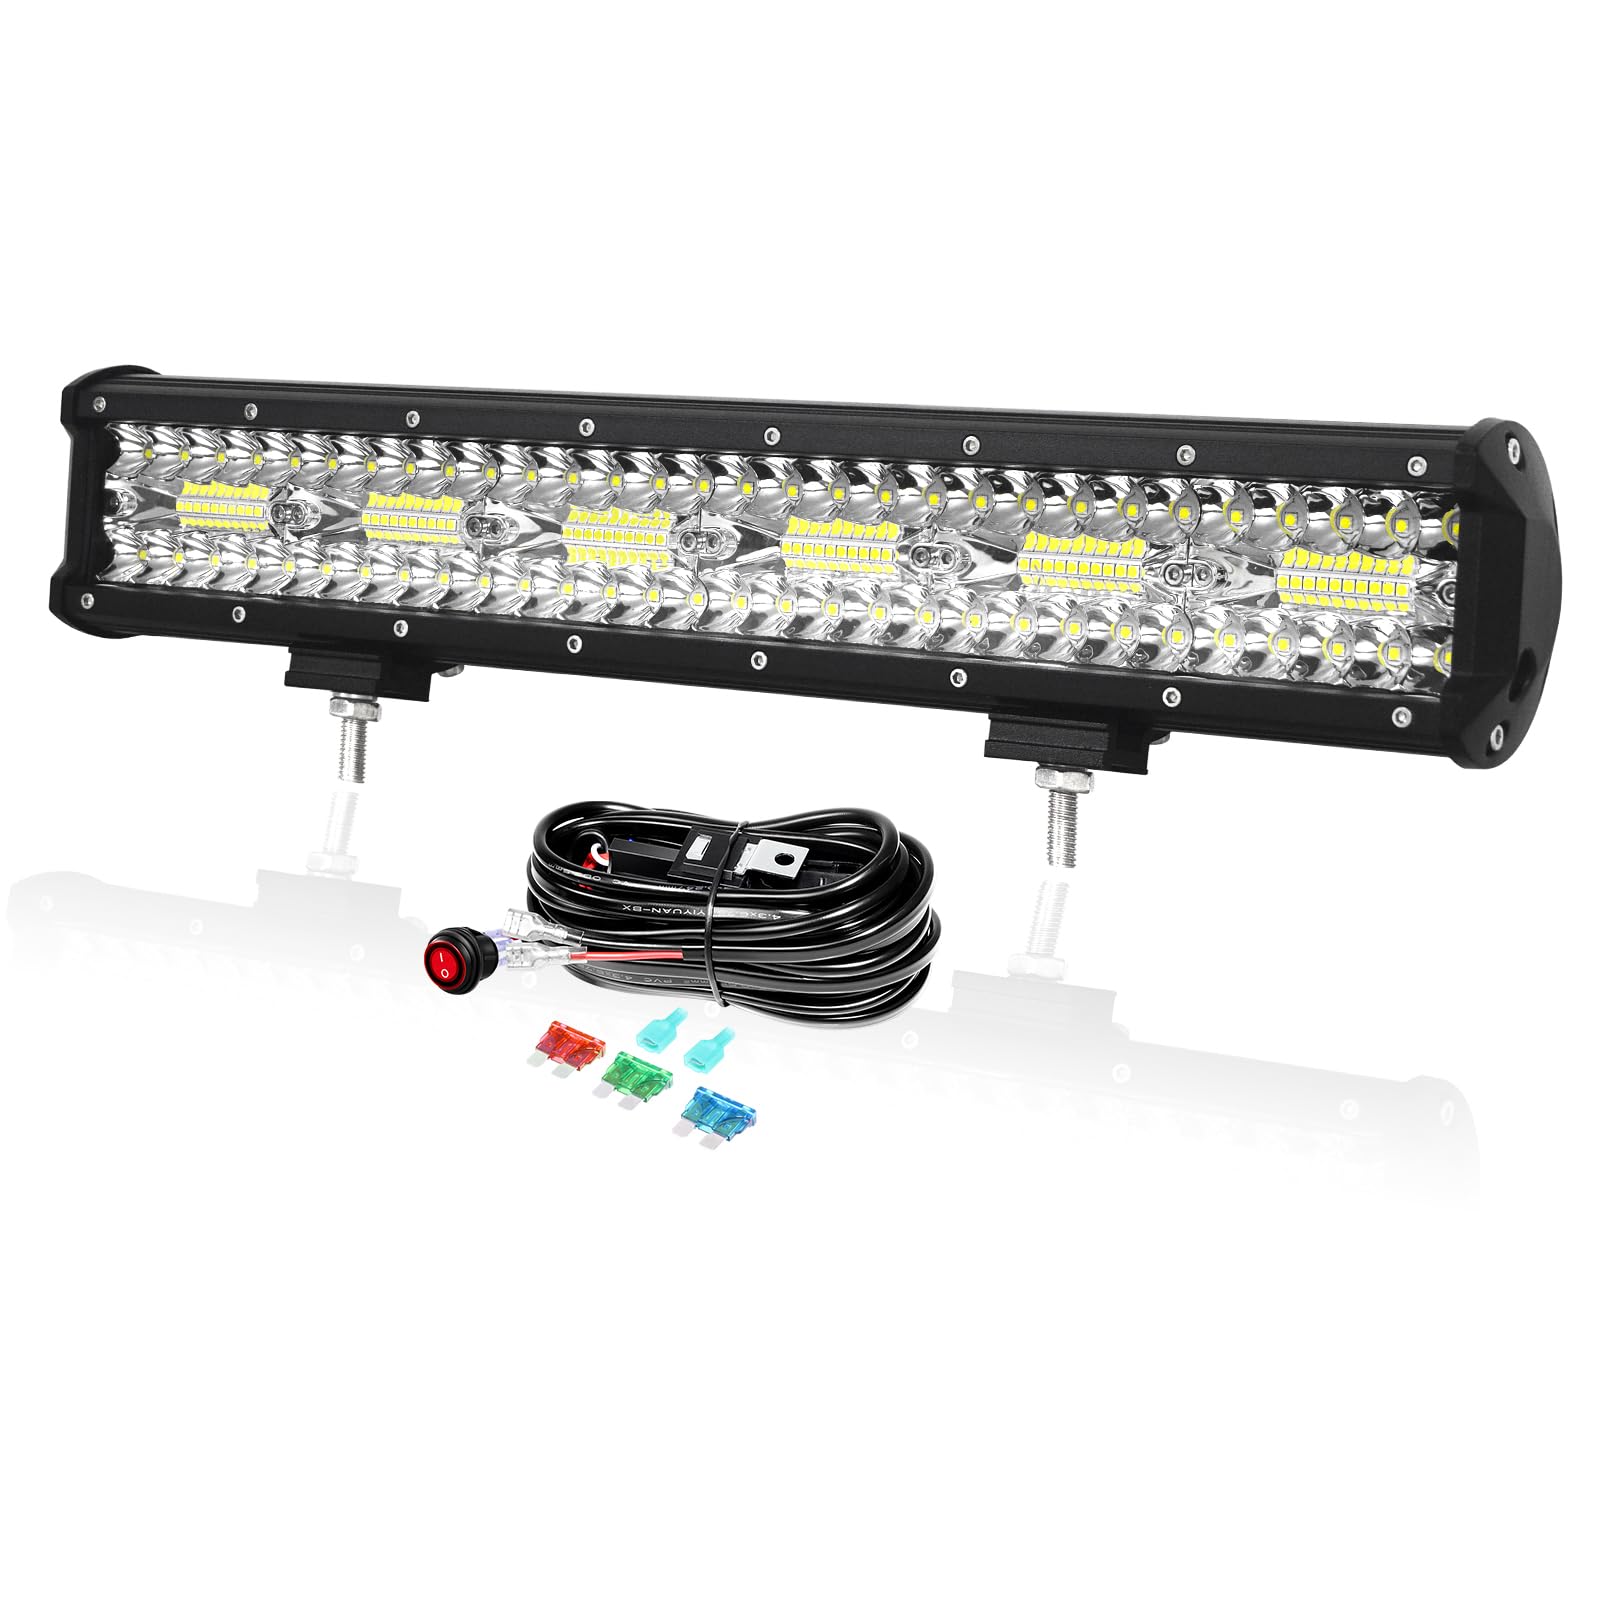 PICAA 17 Zoll 360W LED Lightbar mit Kabelbaum Kit Tri-Reihe LED Lichtbalken Arbeitsscheinwerfer 12V 6000K Weiß Wasserdicht für Auto Offroad 4x4 LKW ATV SUV von PICAA